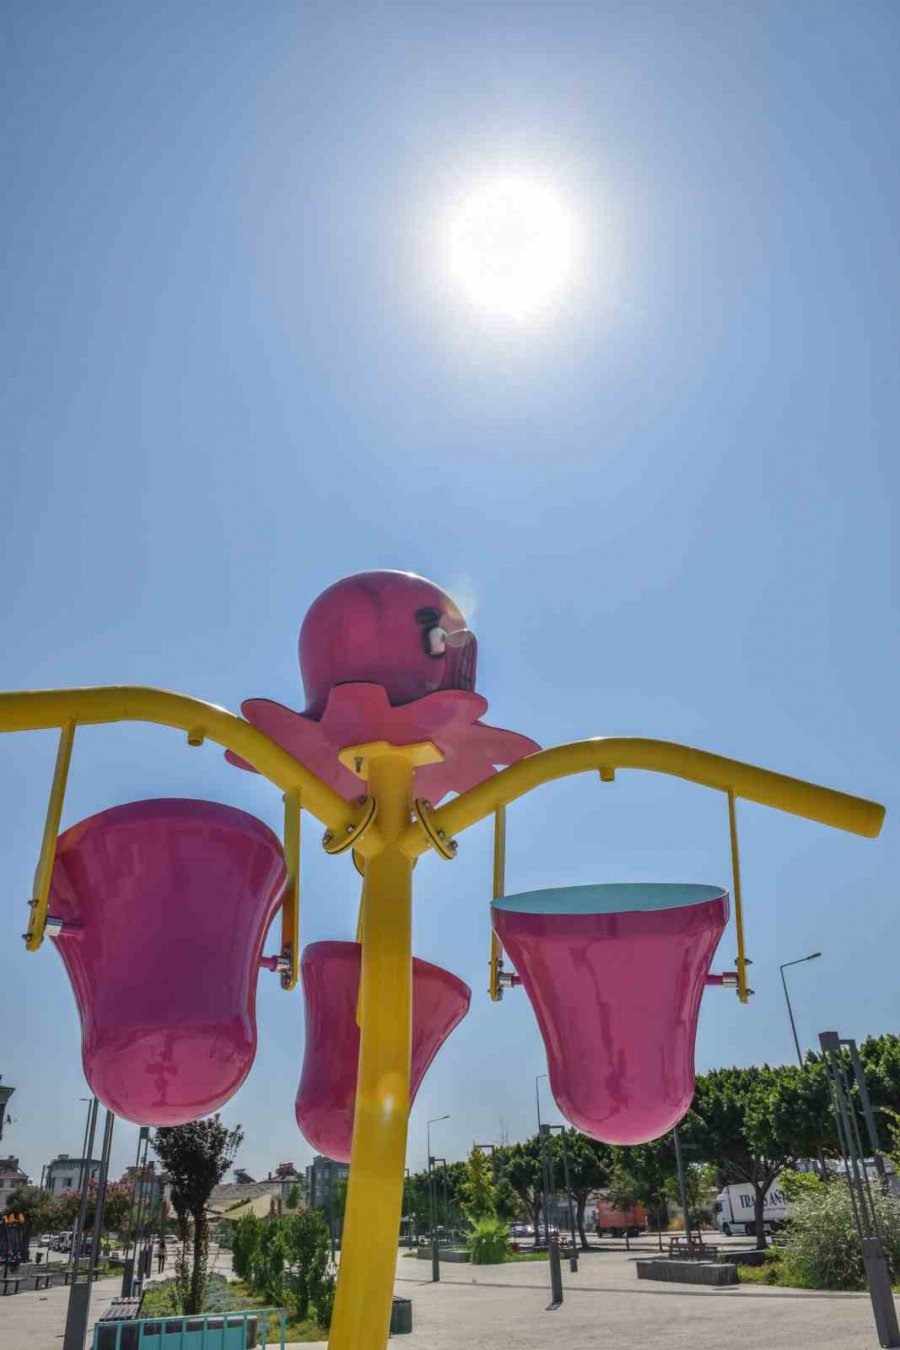 Kepez’de Çocuklara Su Oyun Parkı Yapılıyor